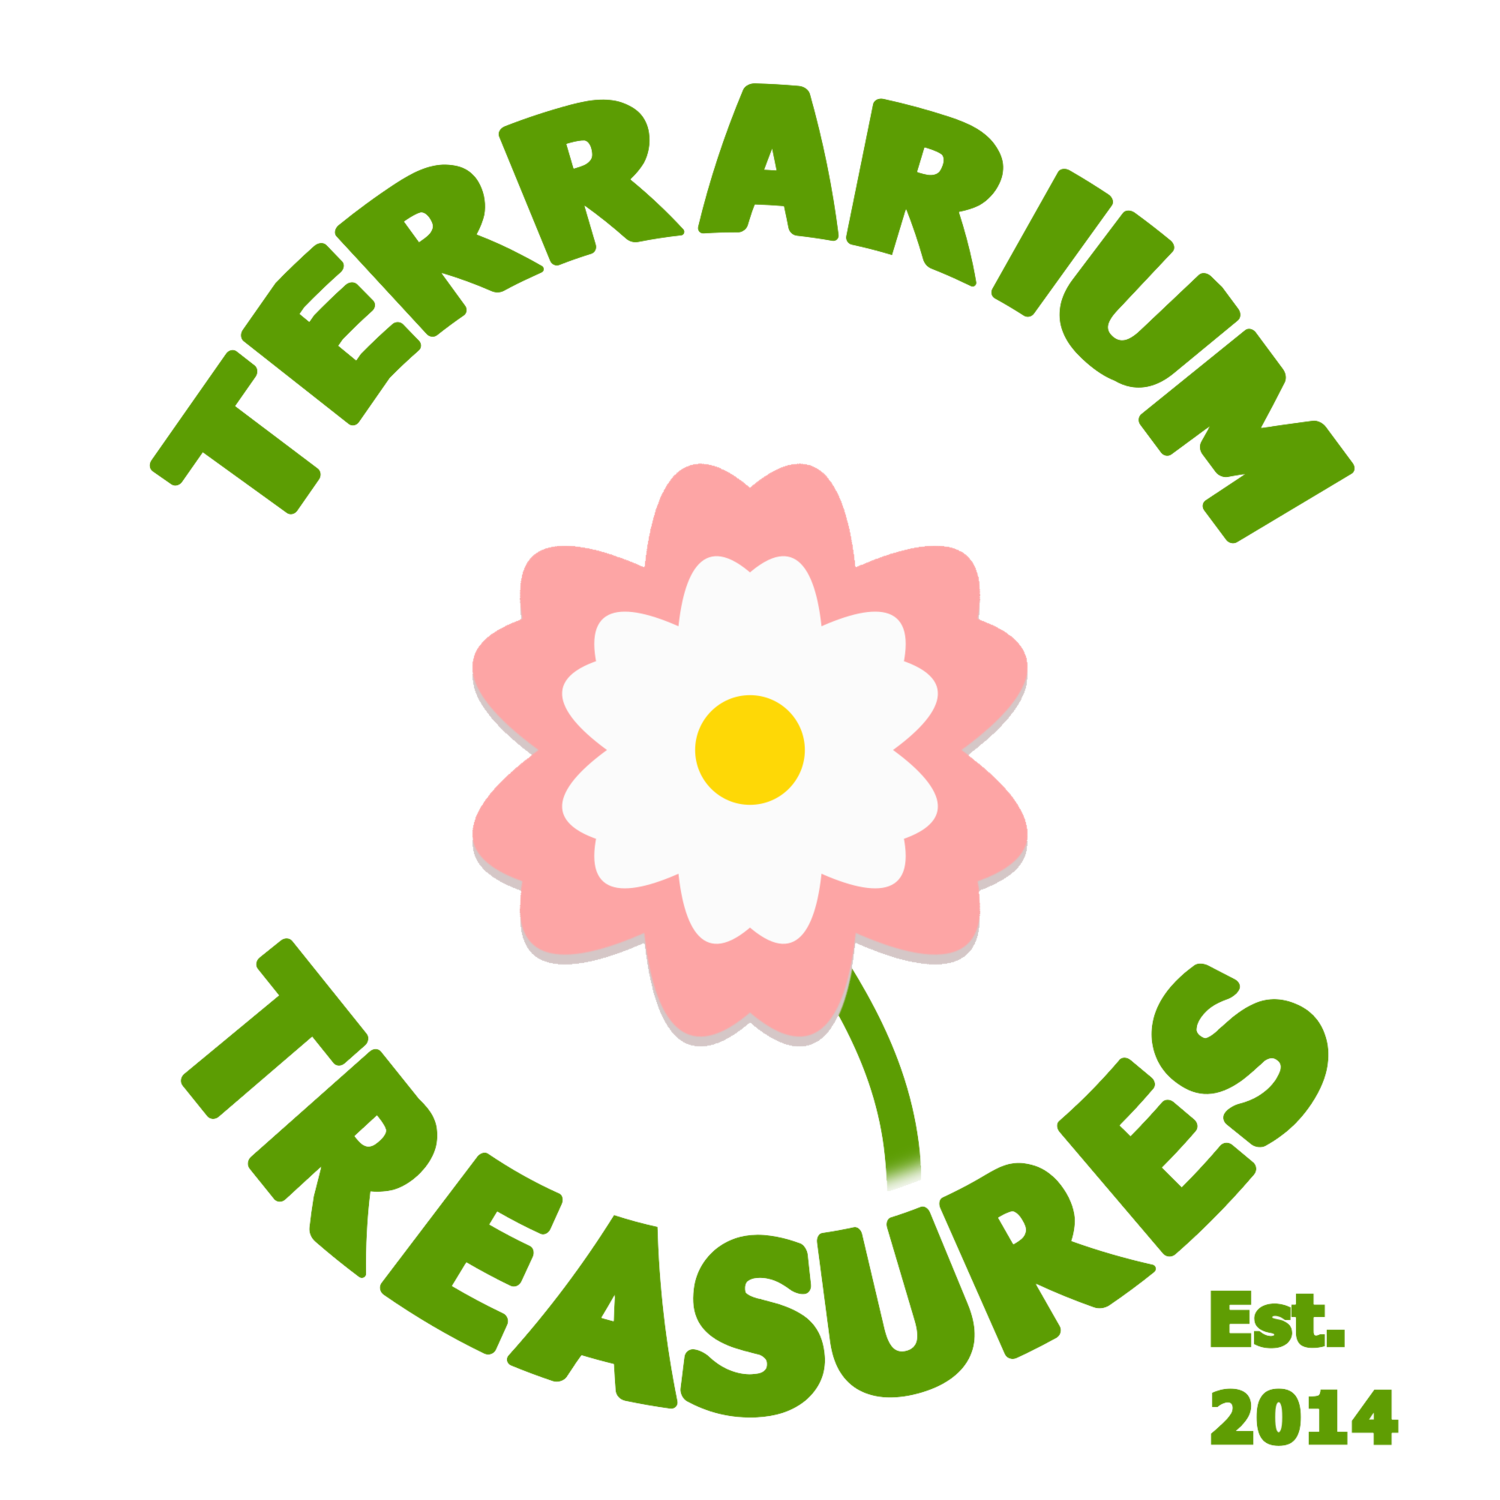 Terrarium Treasures